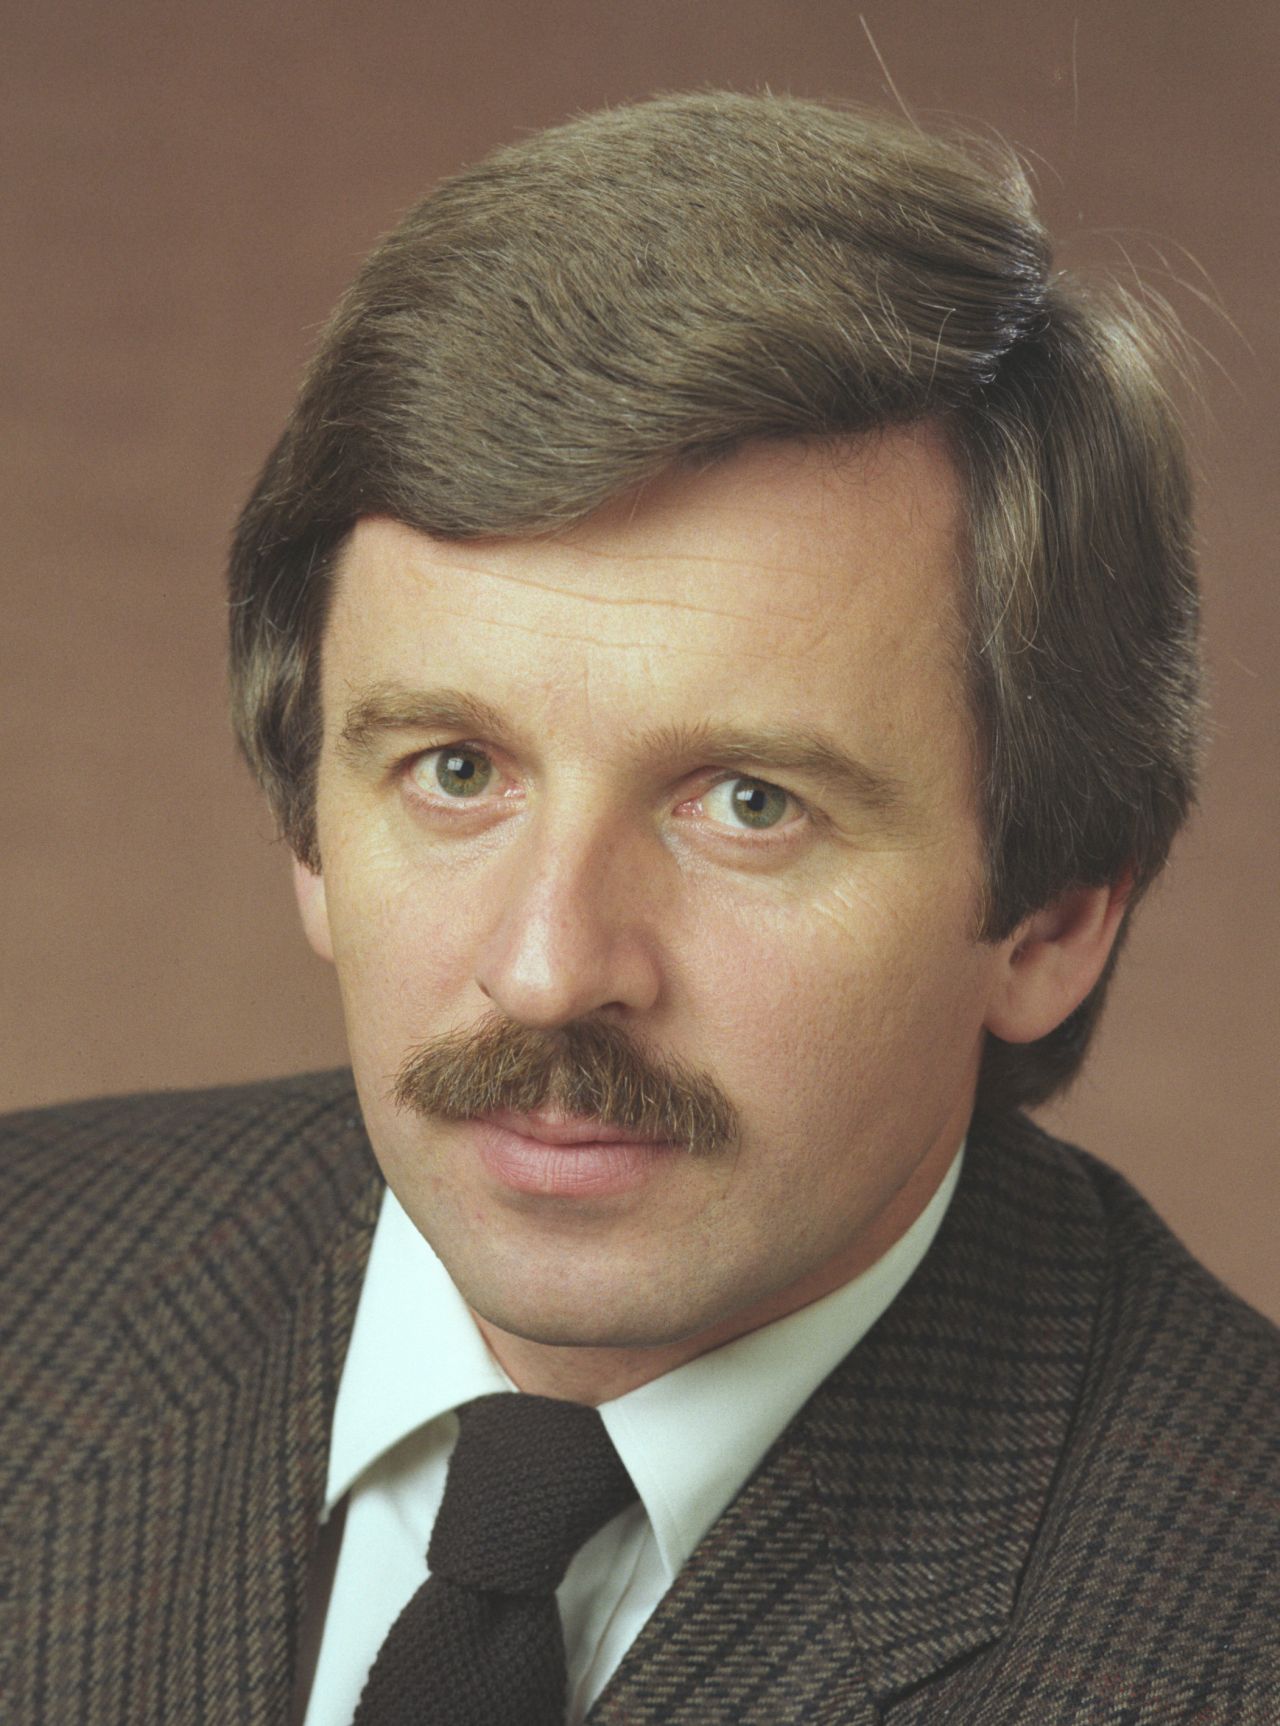 Offizielles Porträt von Jürgen W. Möllemann, Staatsminister im Auswärtigen Amt (1982-1987).